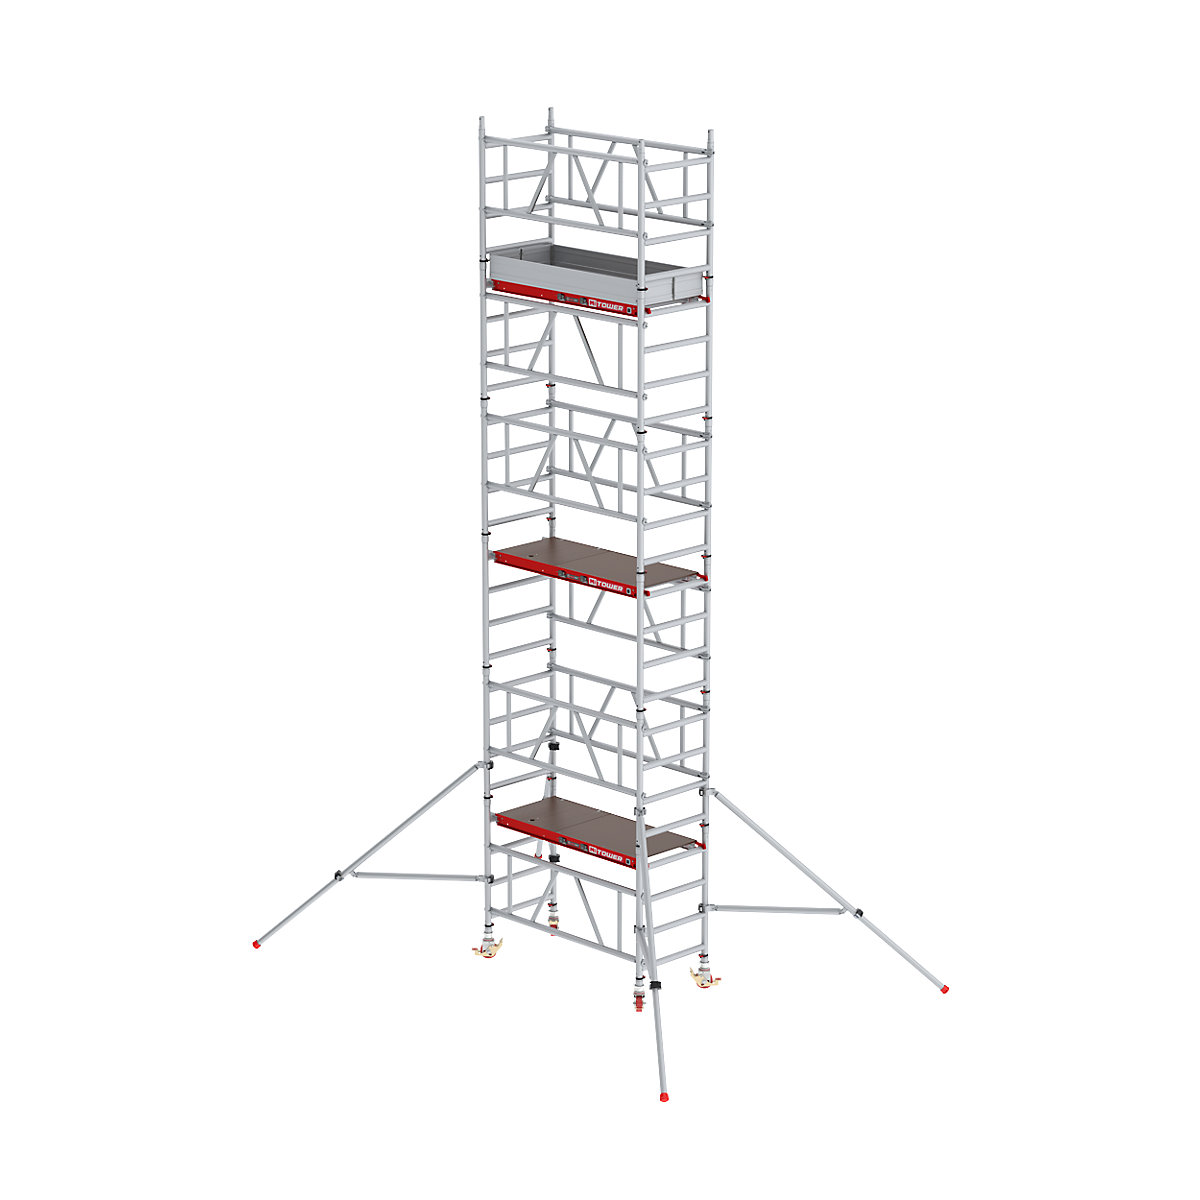 Hitro sestavljiv pomični oder MiTOWER Plus – Altrex, lesena ploščad, delovna višina 7 m